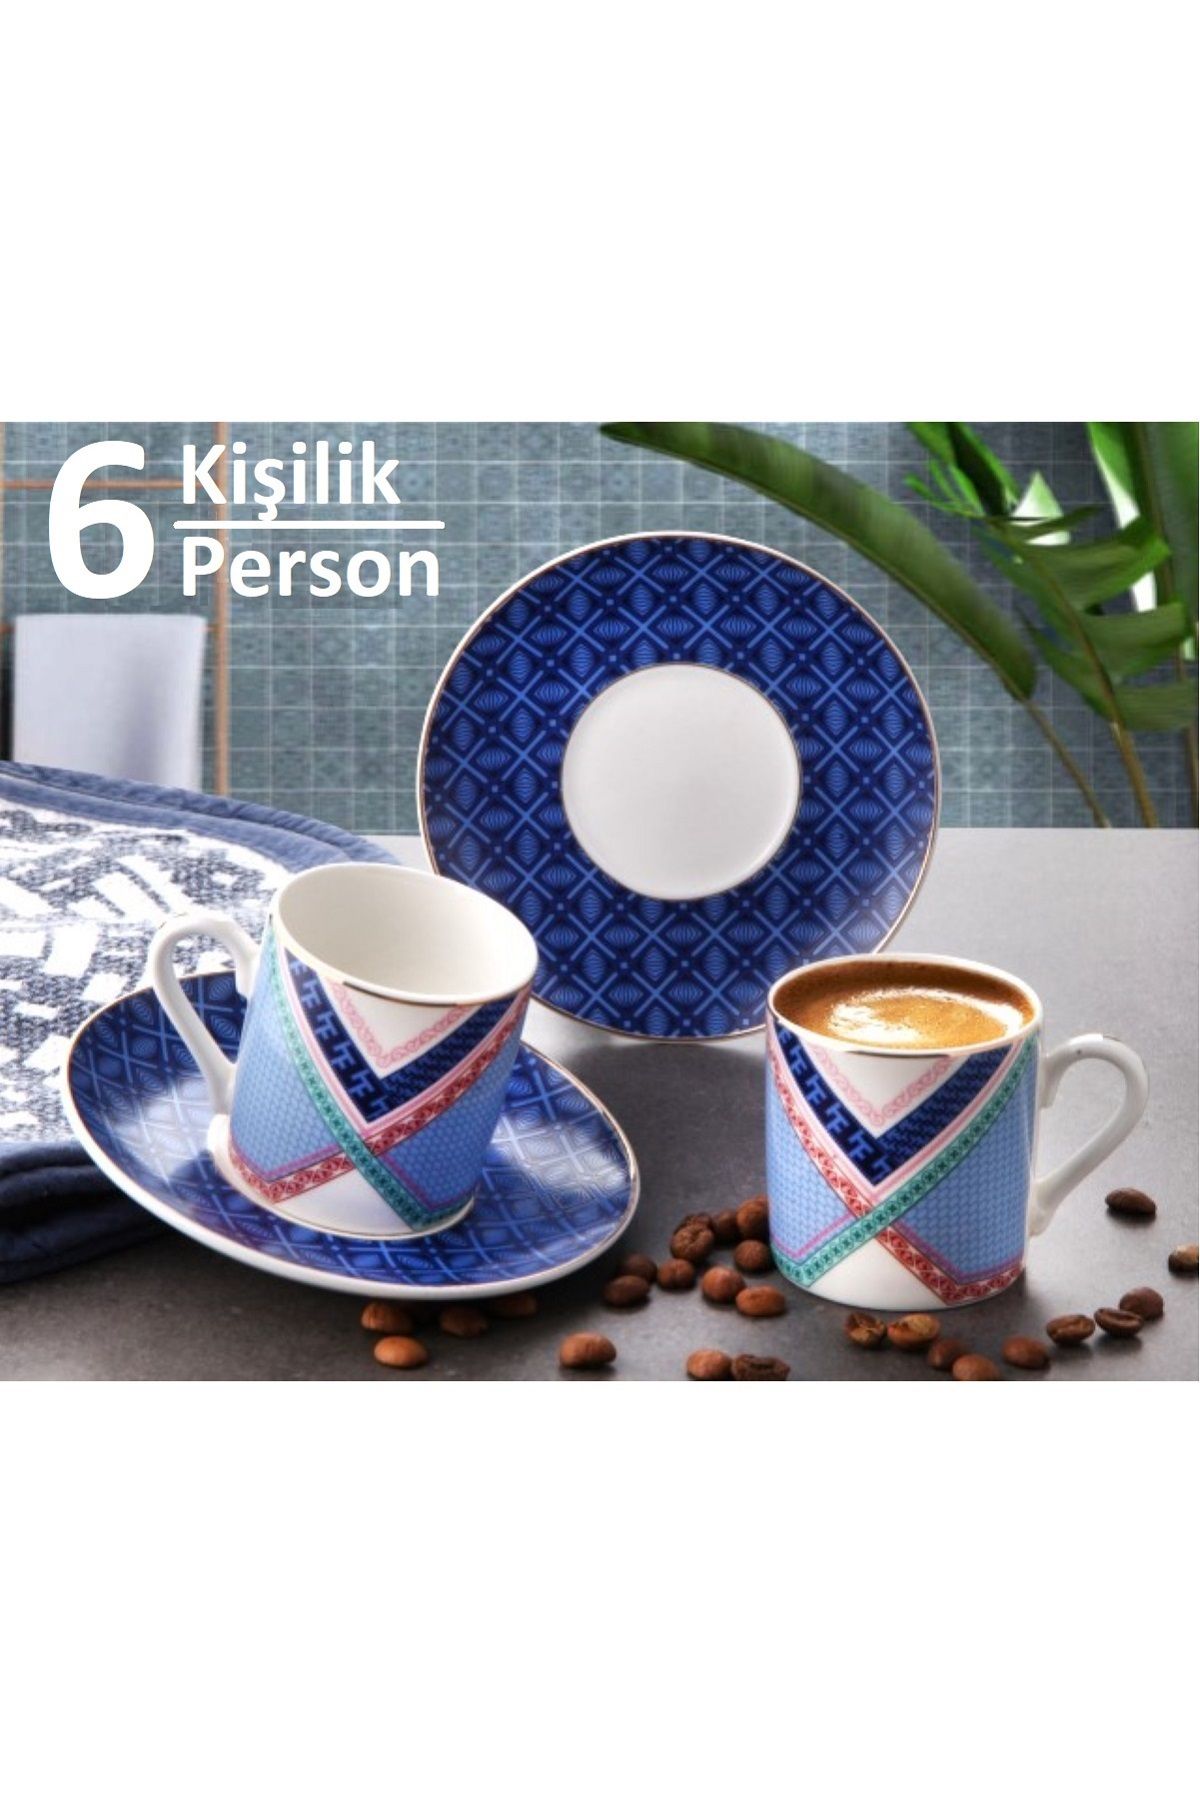 Pinkev 6 Kişilik Porselen Altın Yaldızlı Mavi Renk Desenli Kahve Fincanı Fincan Takımı Seti